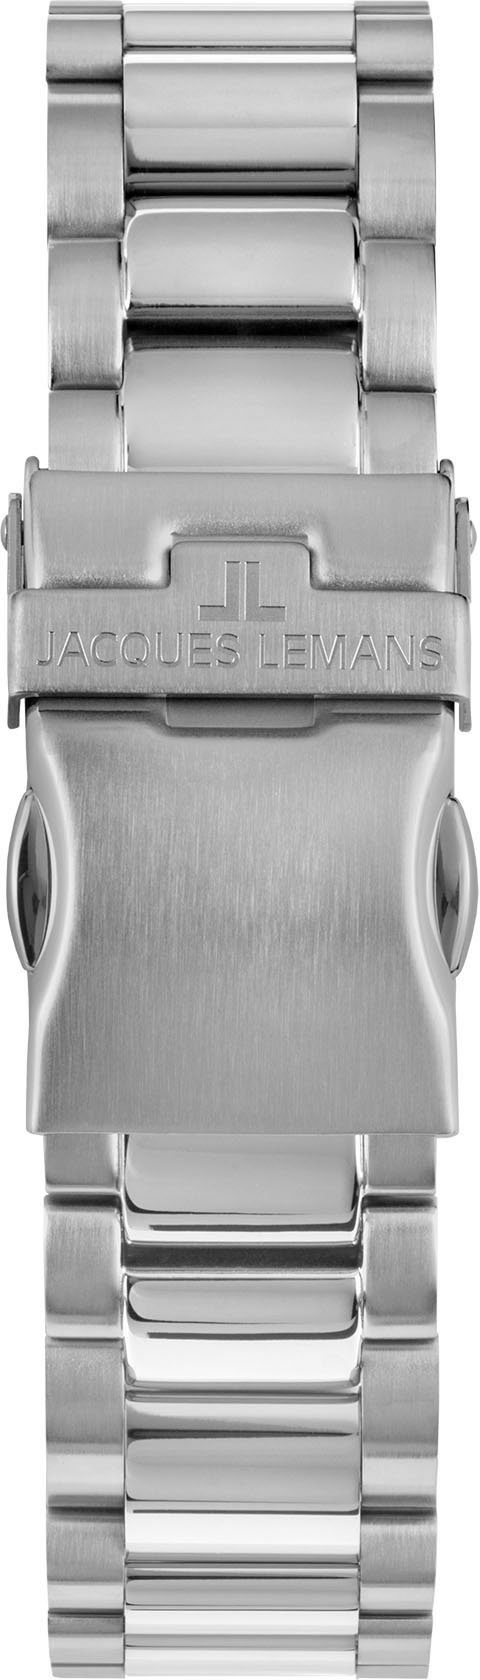 Jacques Lemans Chronograph Liverpool, 1-2140K